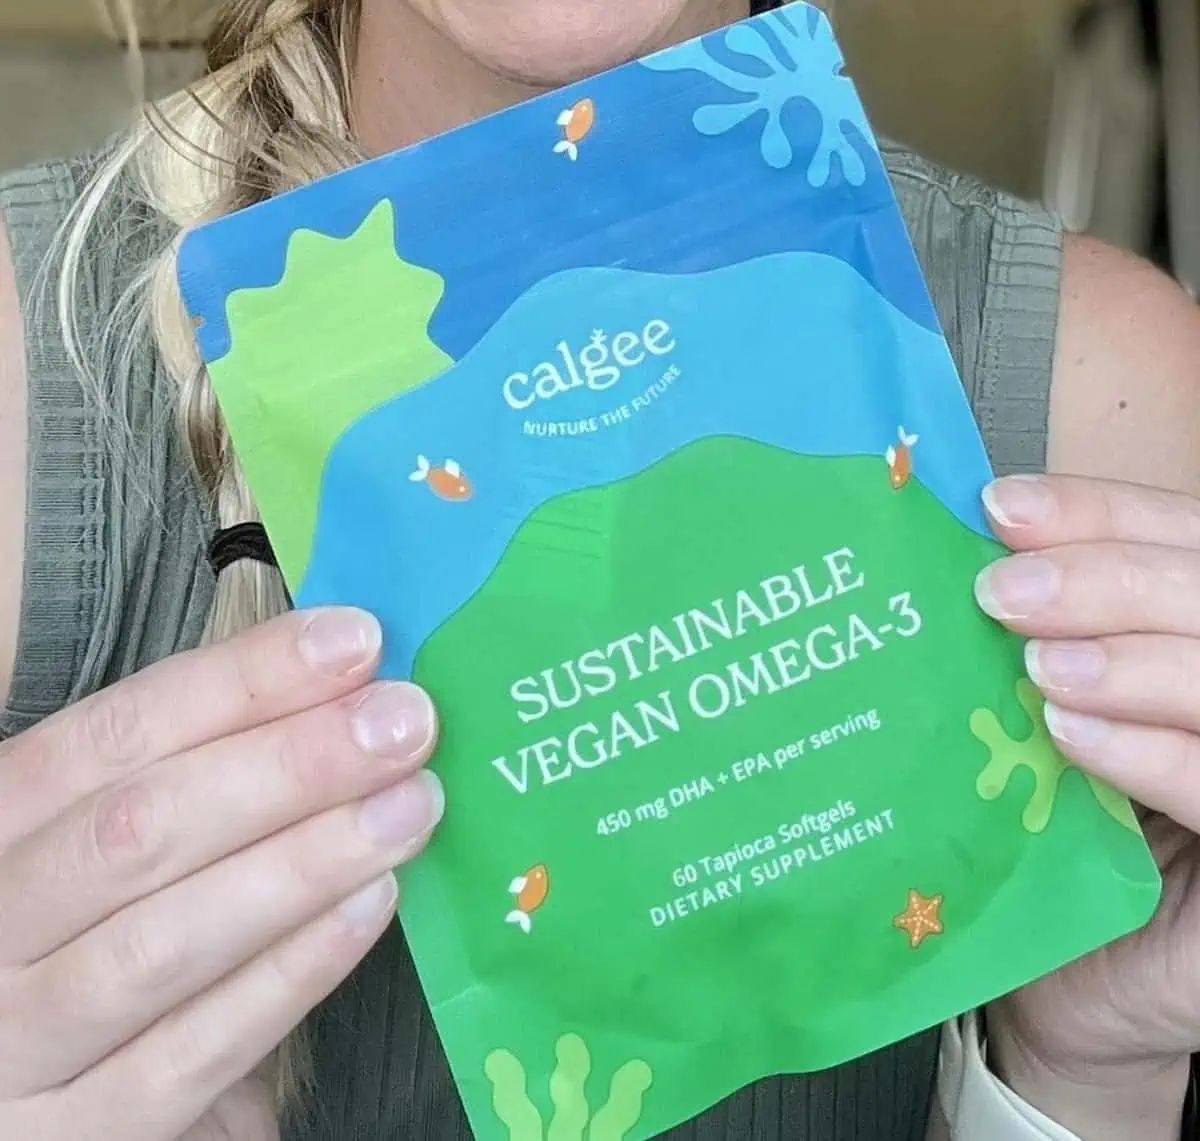 Calgee brand vegan omega-3 supplements.